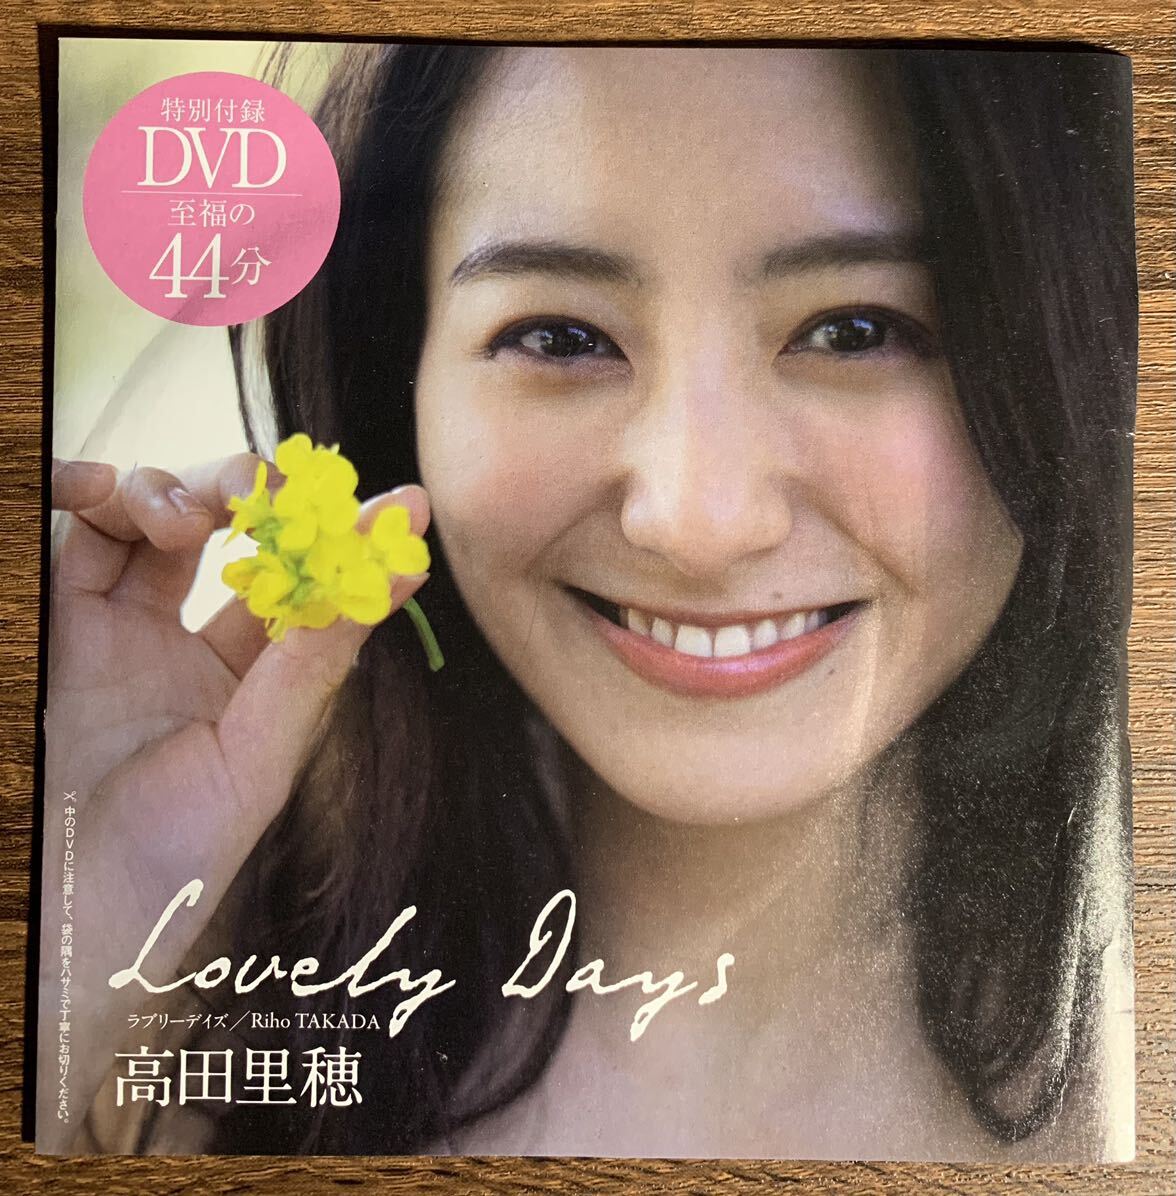 [ идол DVD]Lovely Day\'s takada .. еженедельный Play Boy 2022 NO.17 специальный дополнение DVD { gravure }b21 0620